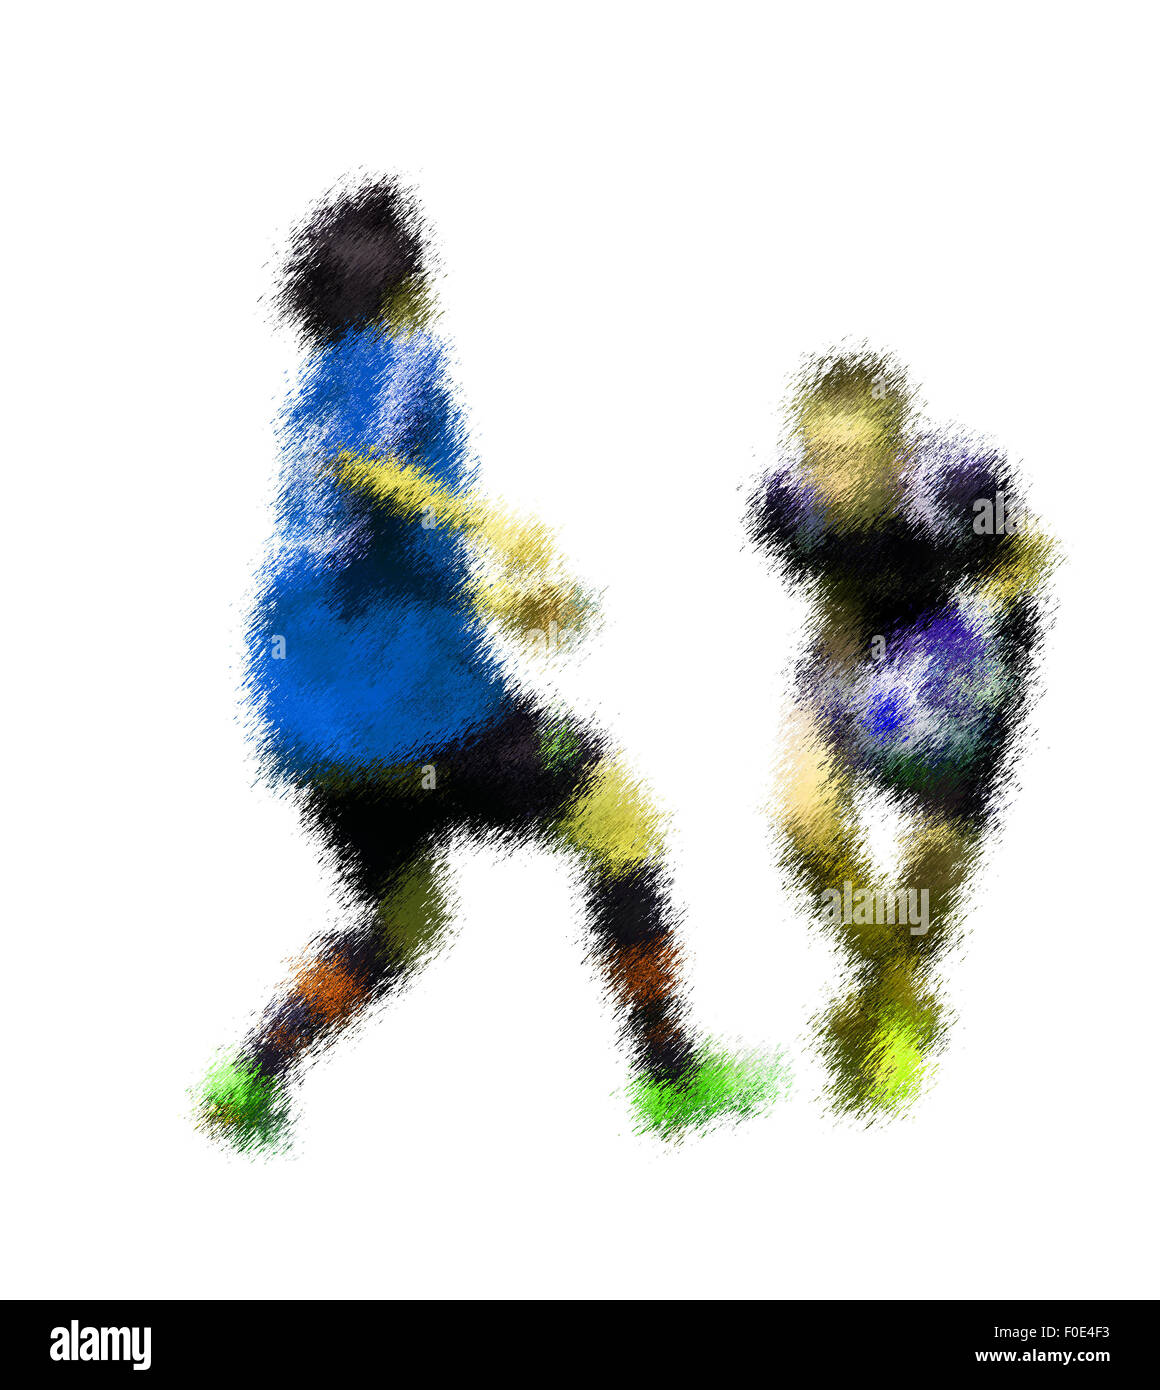 Torwart zu fangen. Abstrakte digitale Illustration von Fußball Fußballer, Jugendliche rund 15 Jahre alt, in Aktion, die isoliert auf Stockfoto